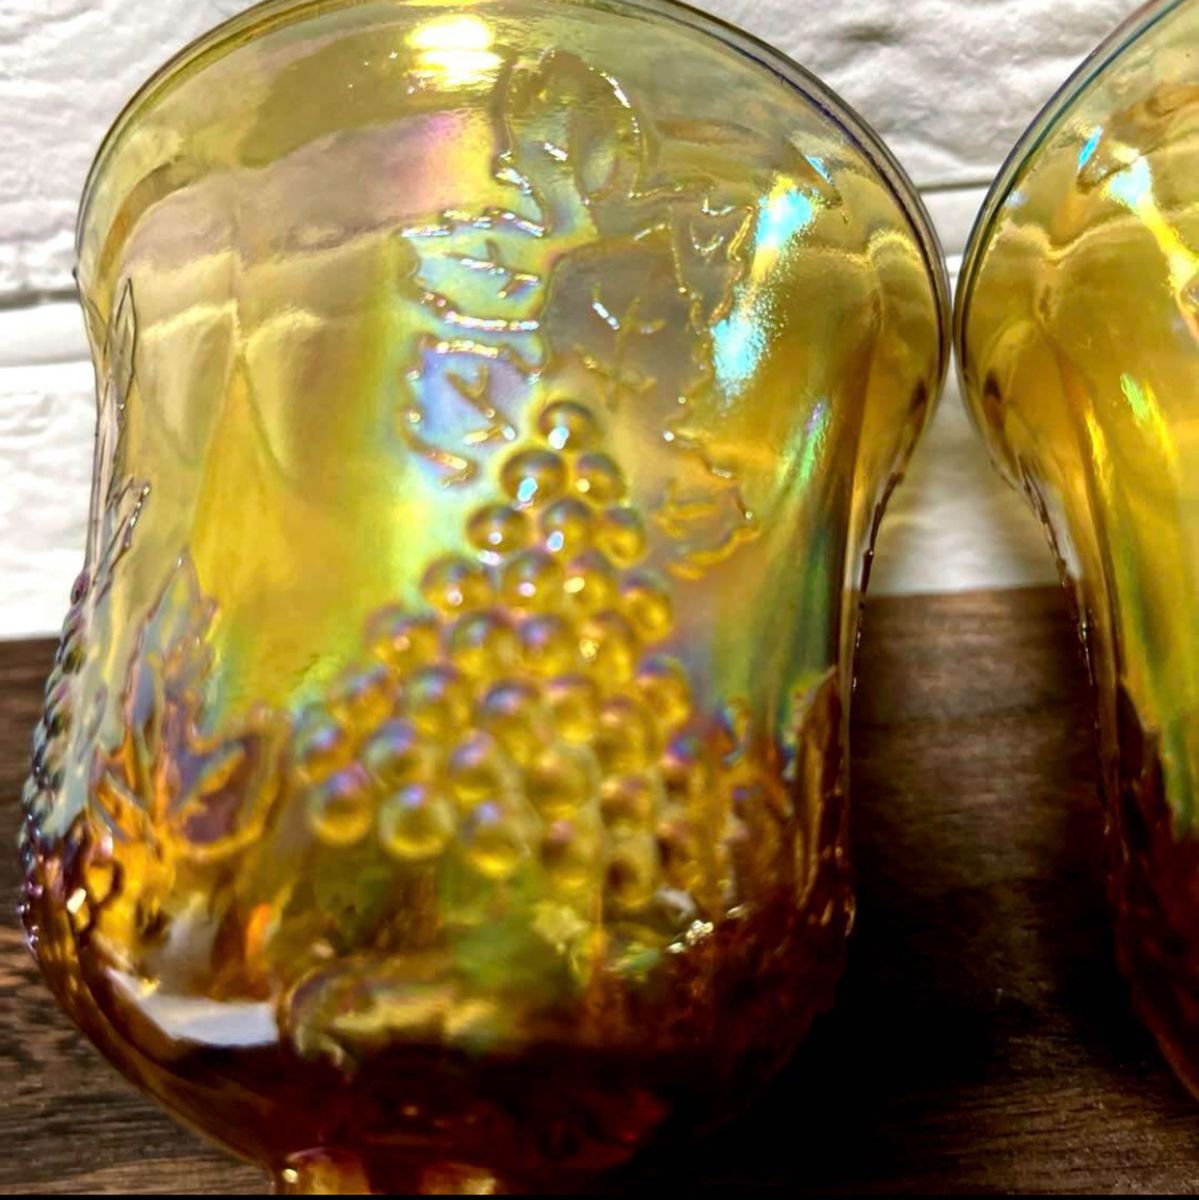 Indiana Carnival Glass ハーベスト　葡萄柄グラス2点セット　アンバー　ビンテージ　ワイングラス　ゴブレット